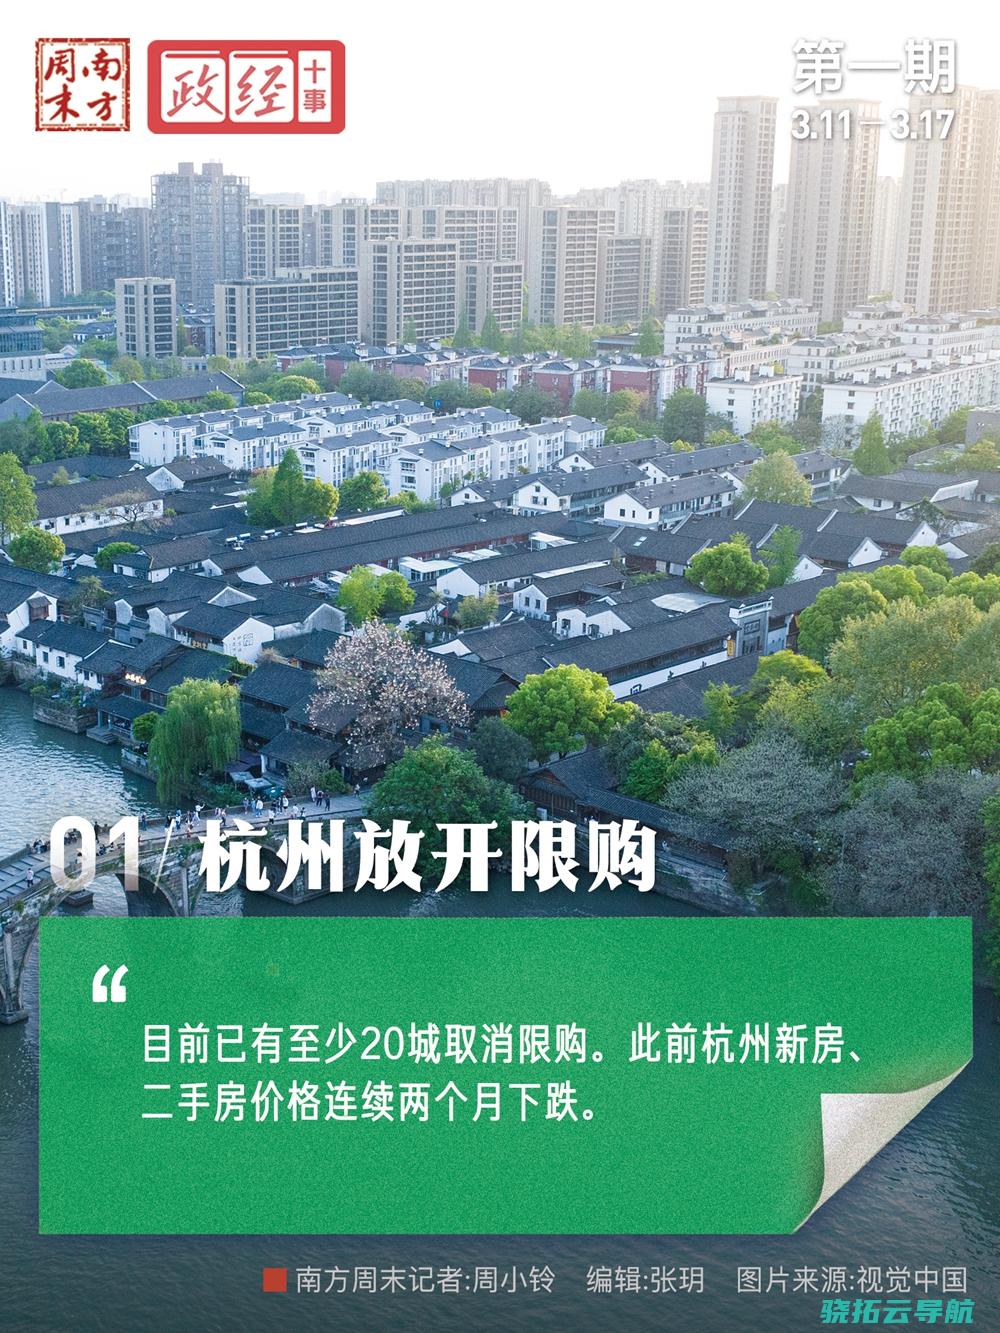 政经十事 杭州片面开放限购 追随二十余个市区脚步